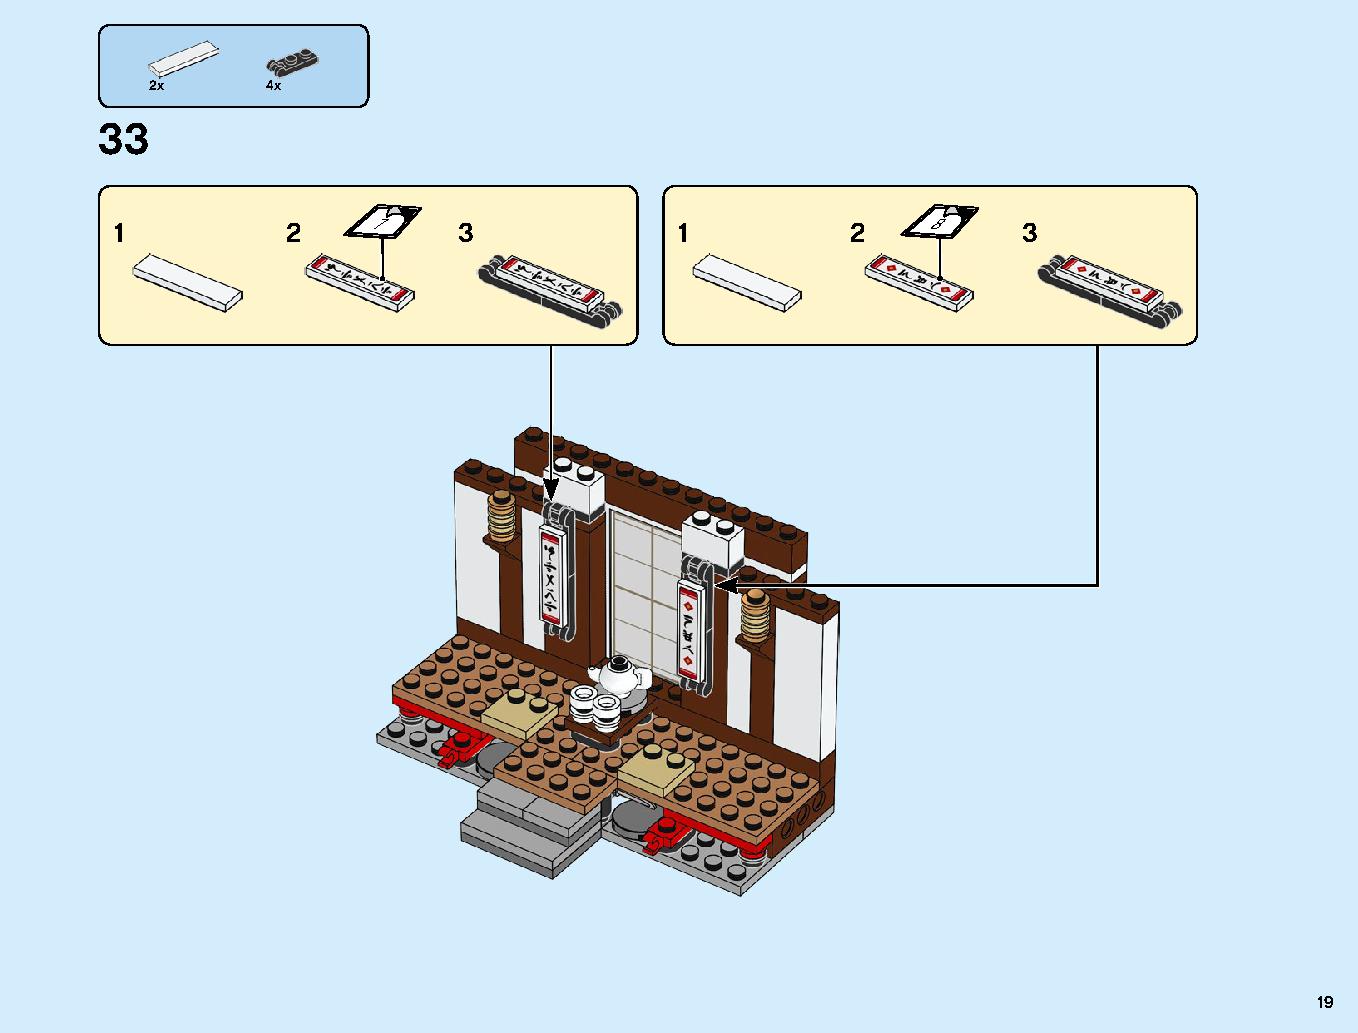 ニンジャ道場 70670 レゴの商品情報 レゴの説明書・組立方法 19 page